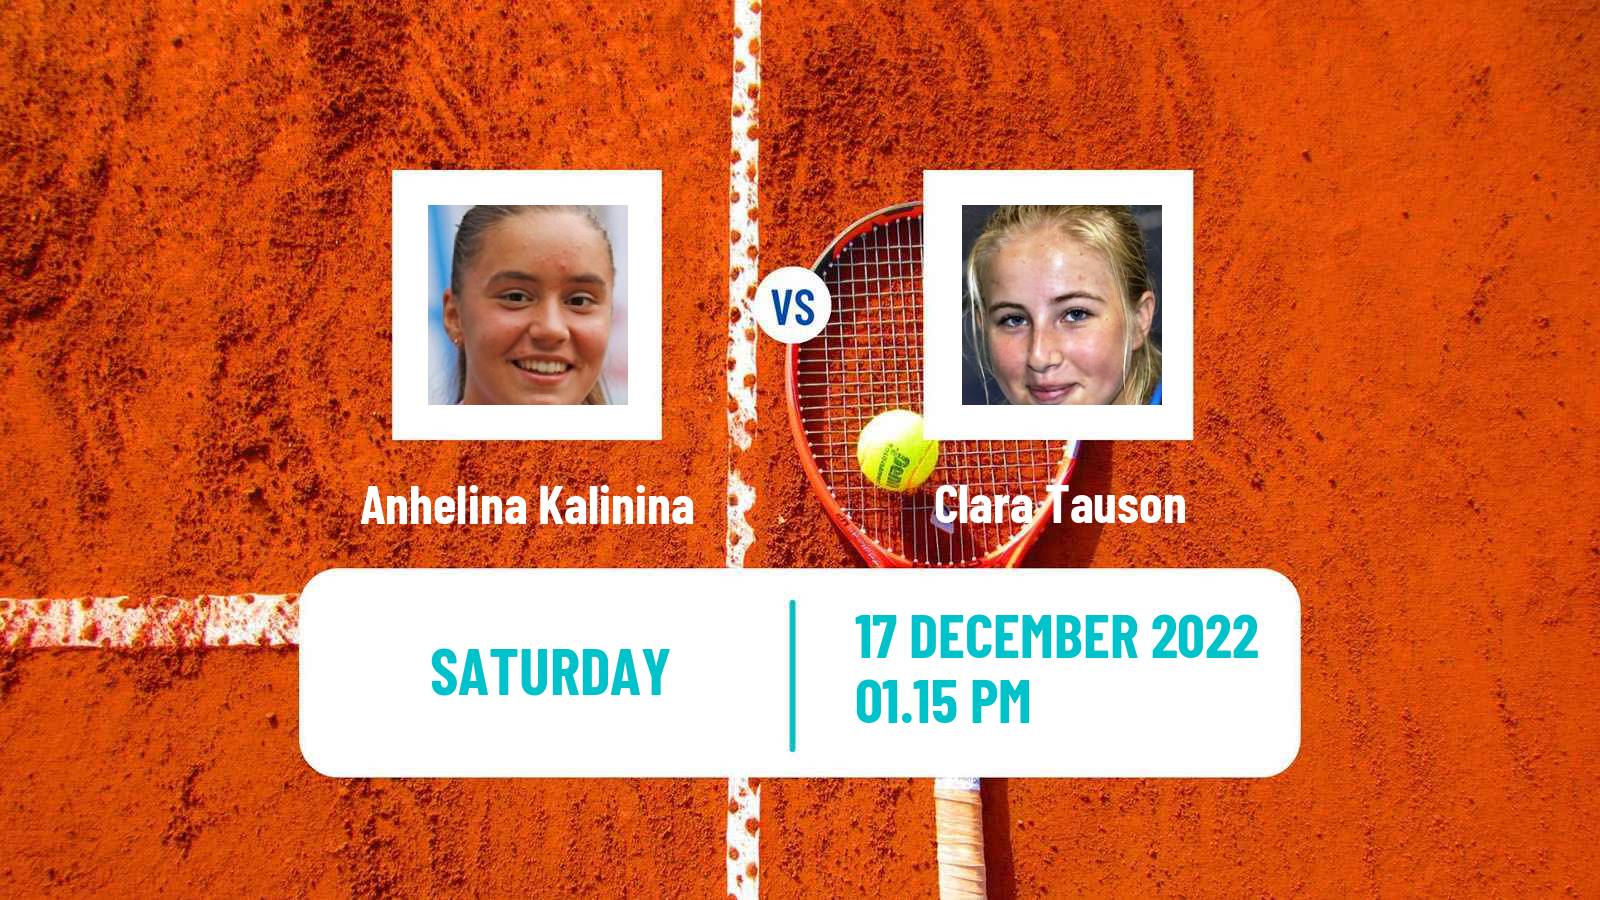 Tennis ATP Challenger Anhelina Kalinina - Clara Tauson